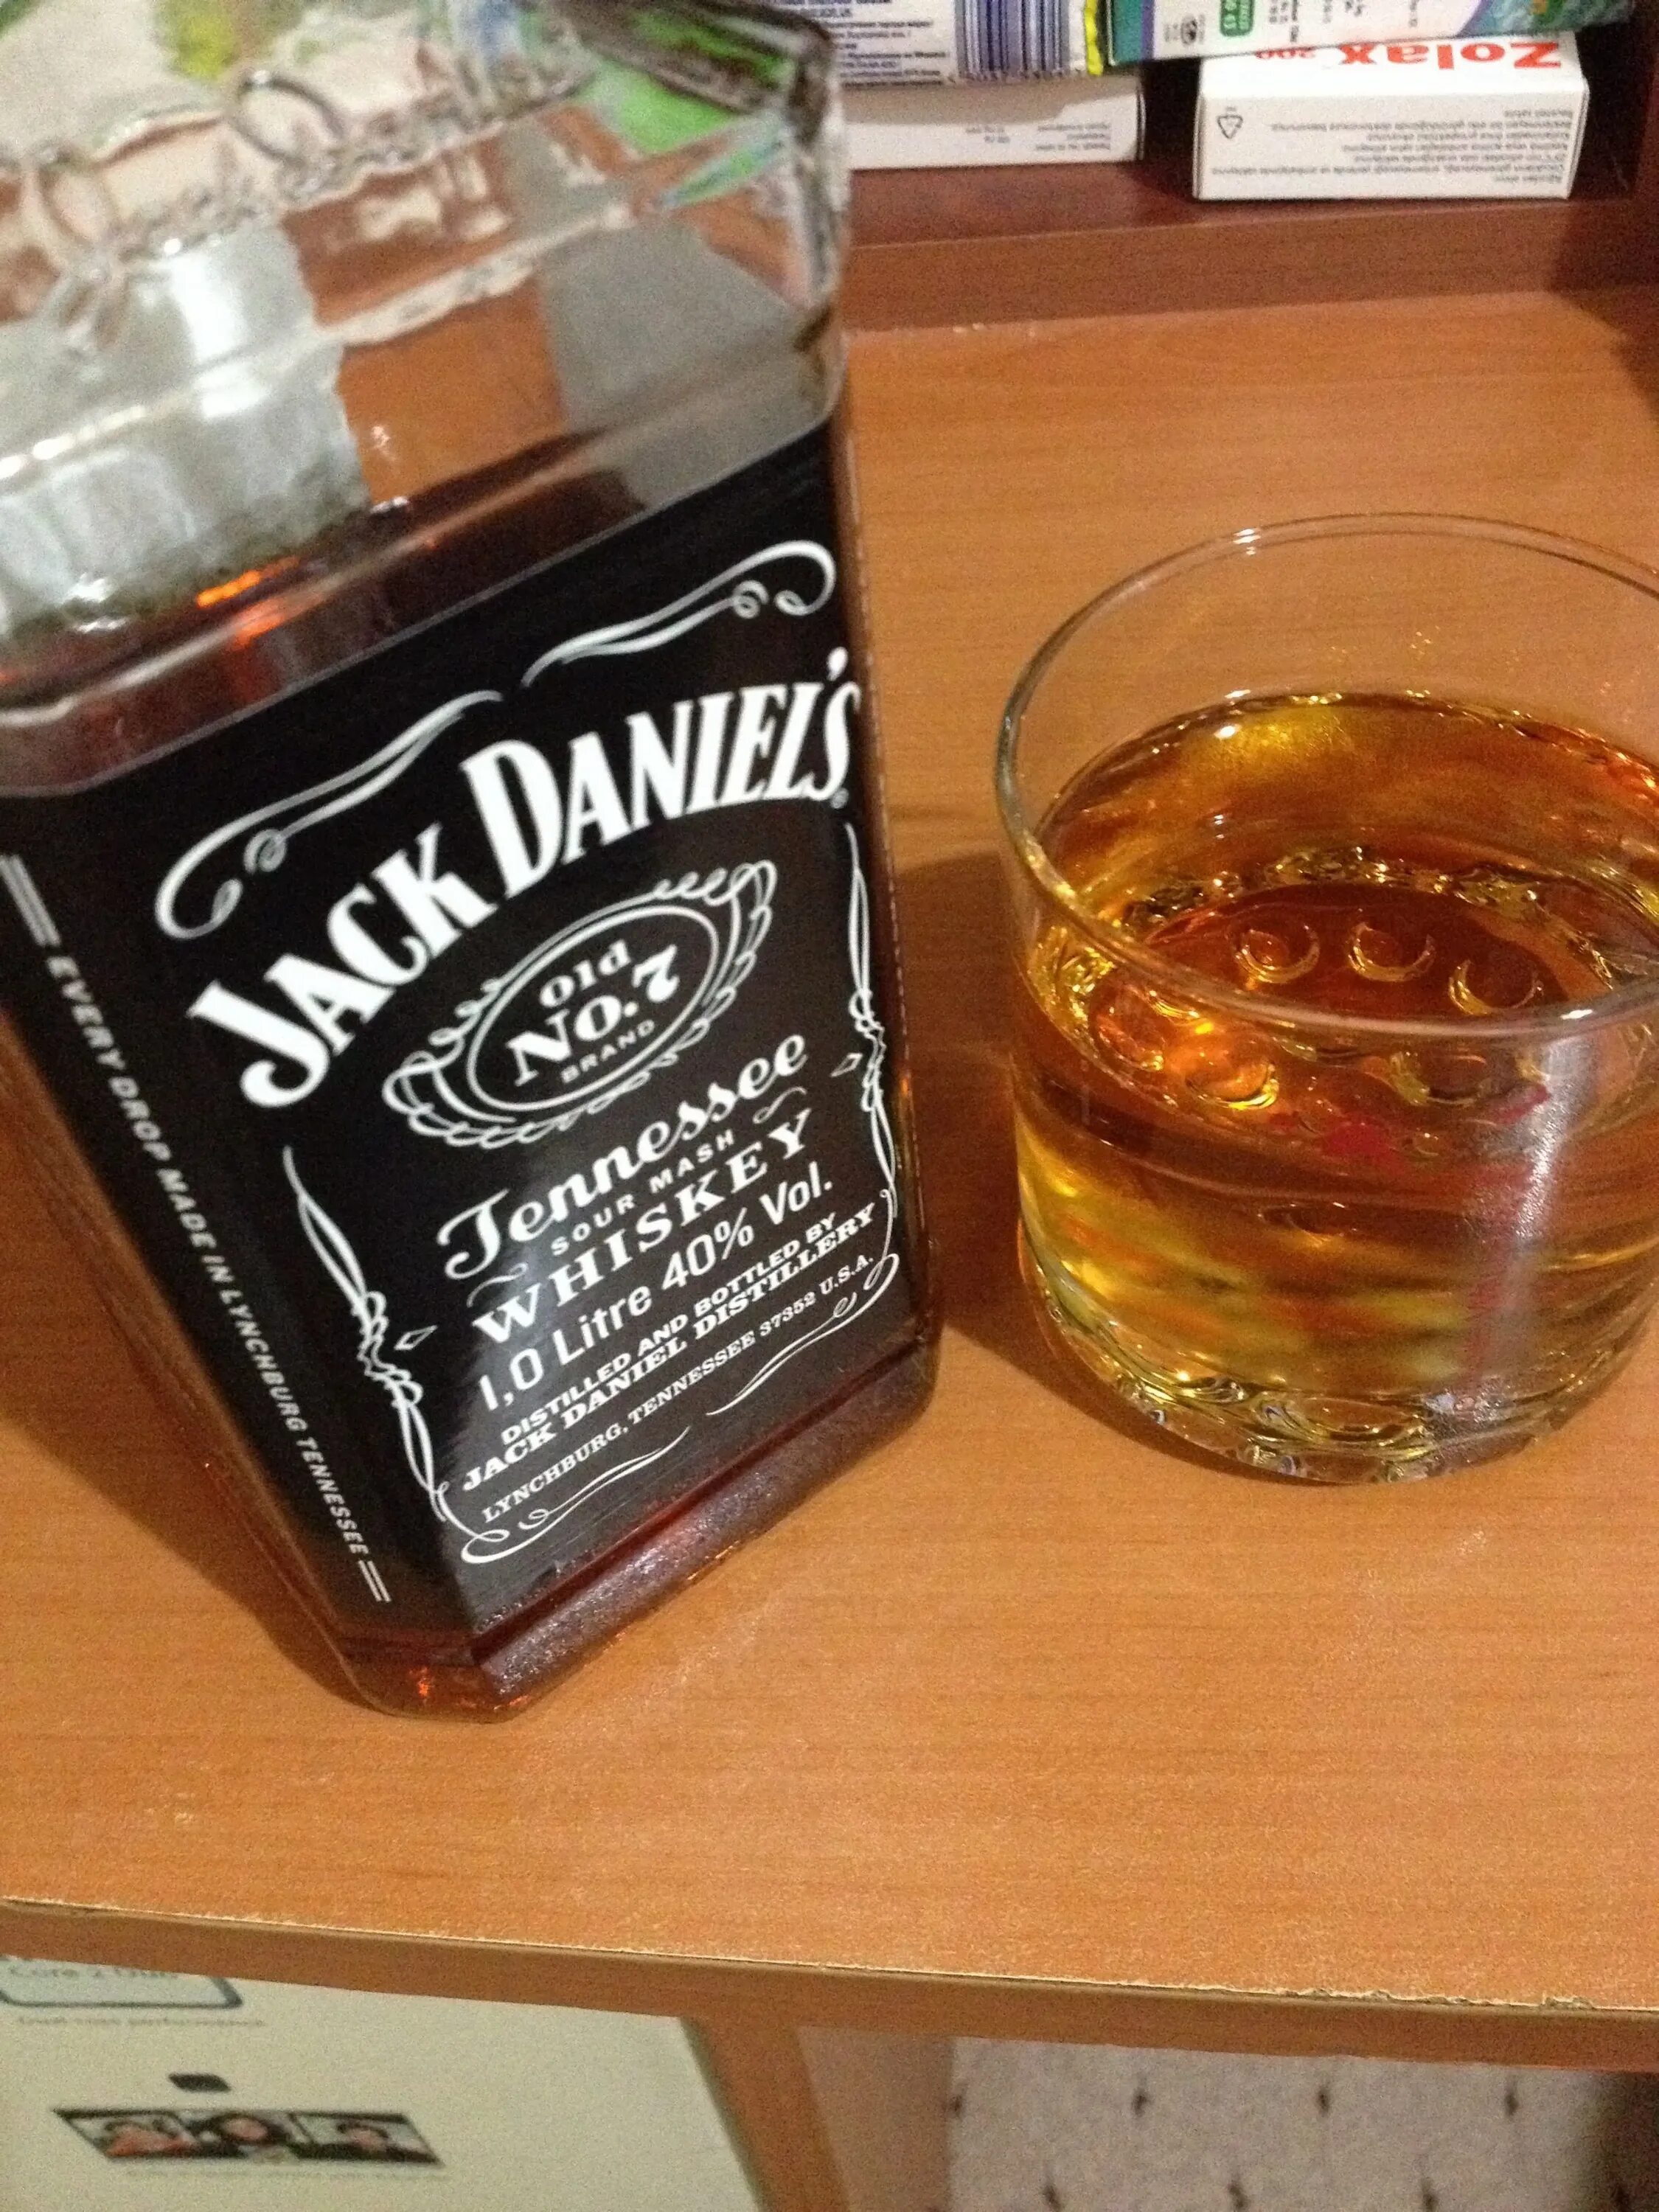 Виски Джек Дэниэлс дома. Стаканы для виски Джек Дэниэлс. Виски Джек Дэниэлс на столе. Бутылка коньяка Джек Дэниэлс. Пьем виски дома